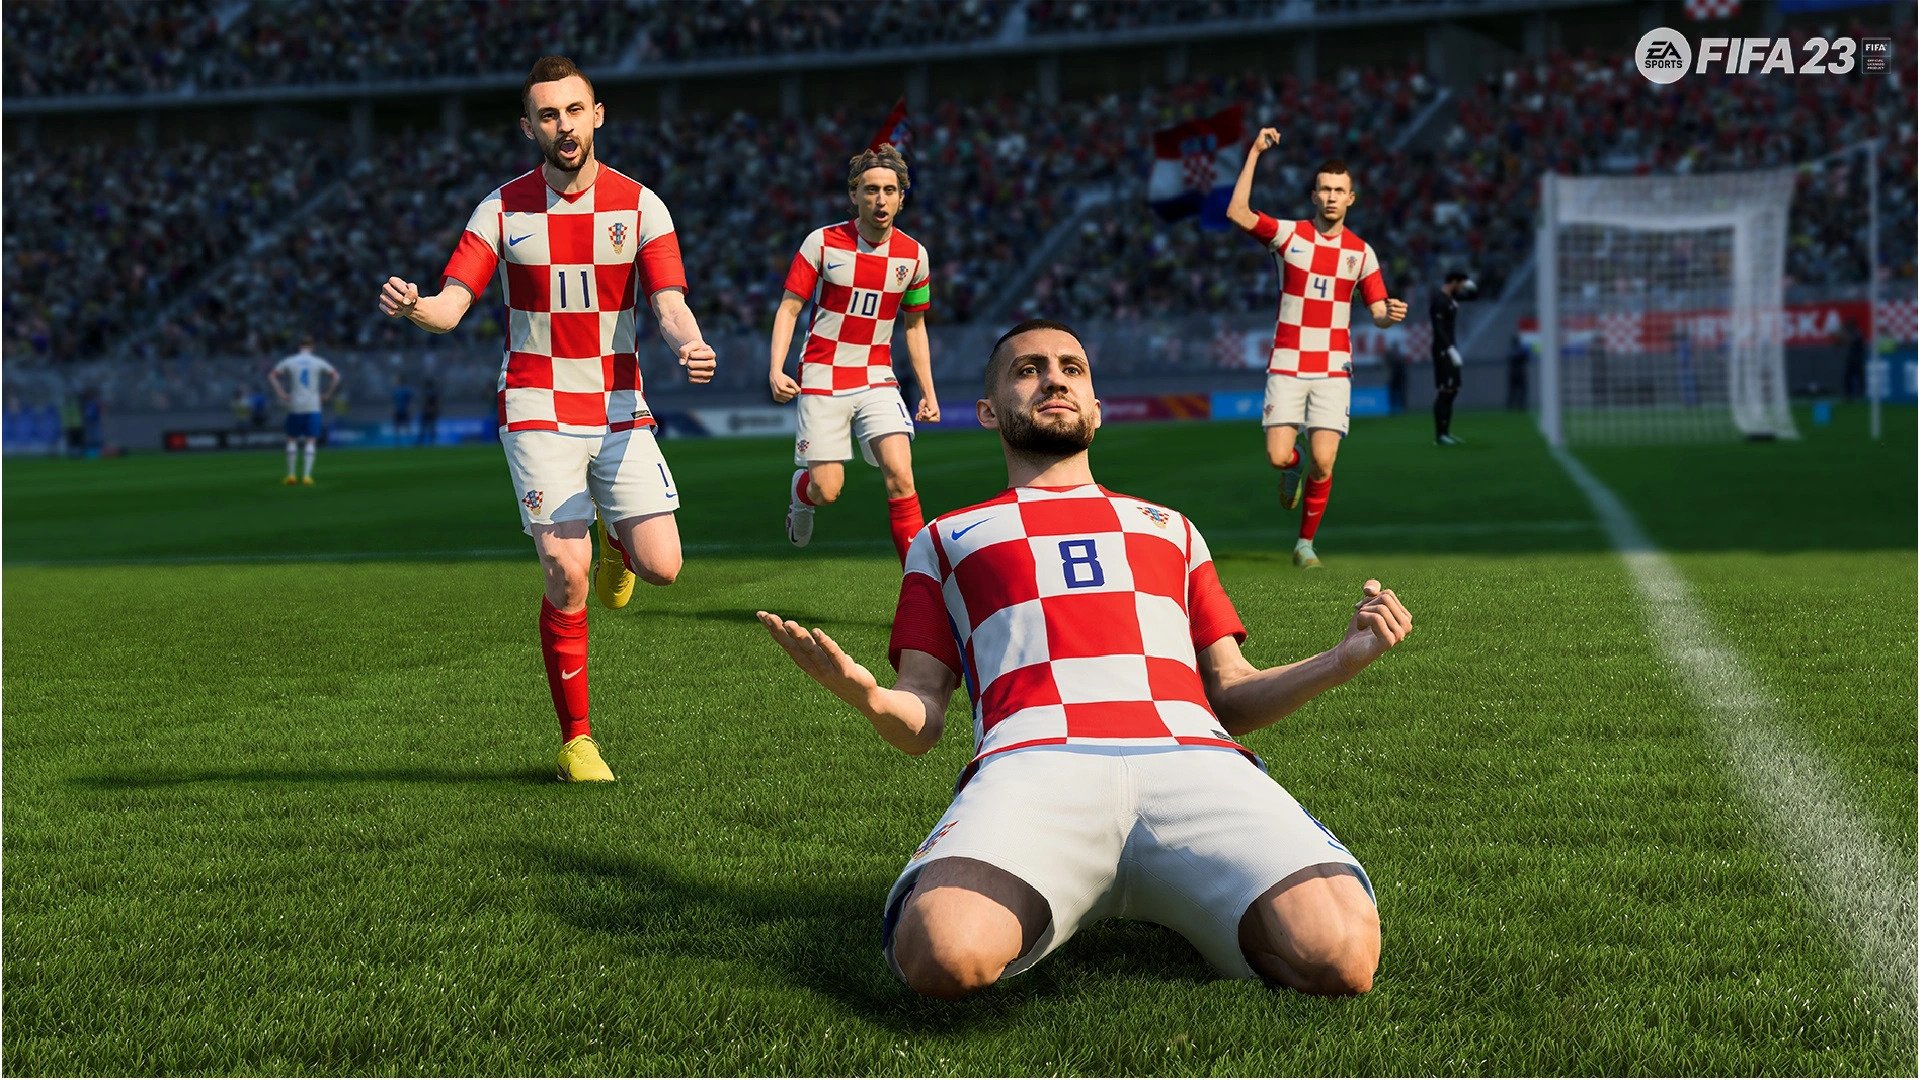 FIFA 23 Update 1.07